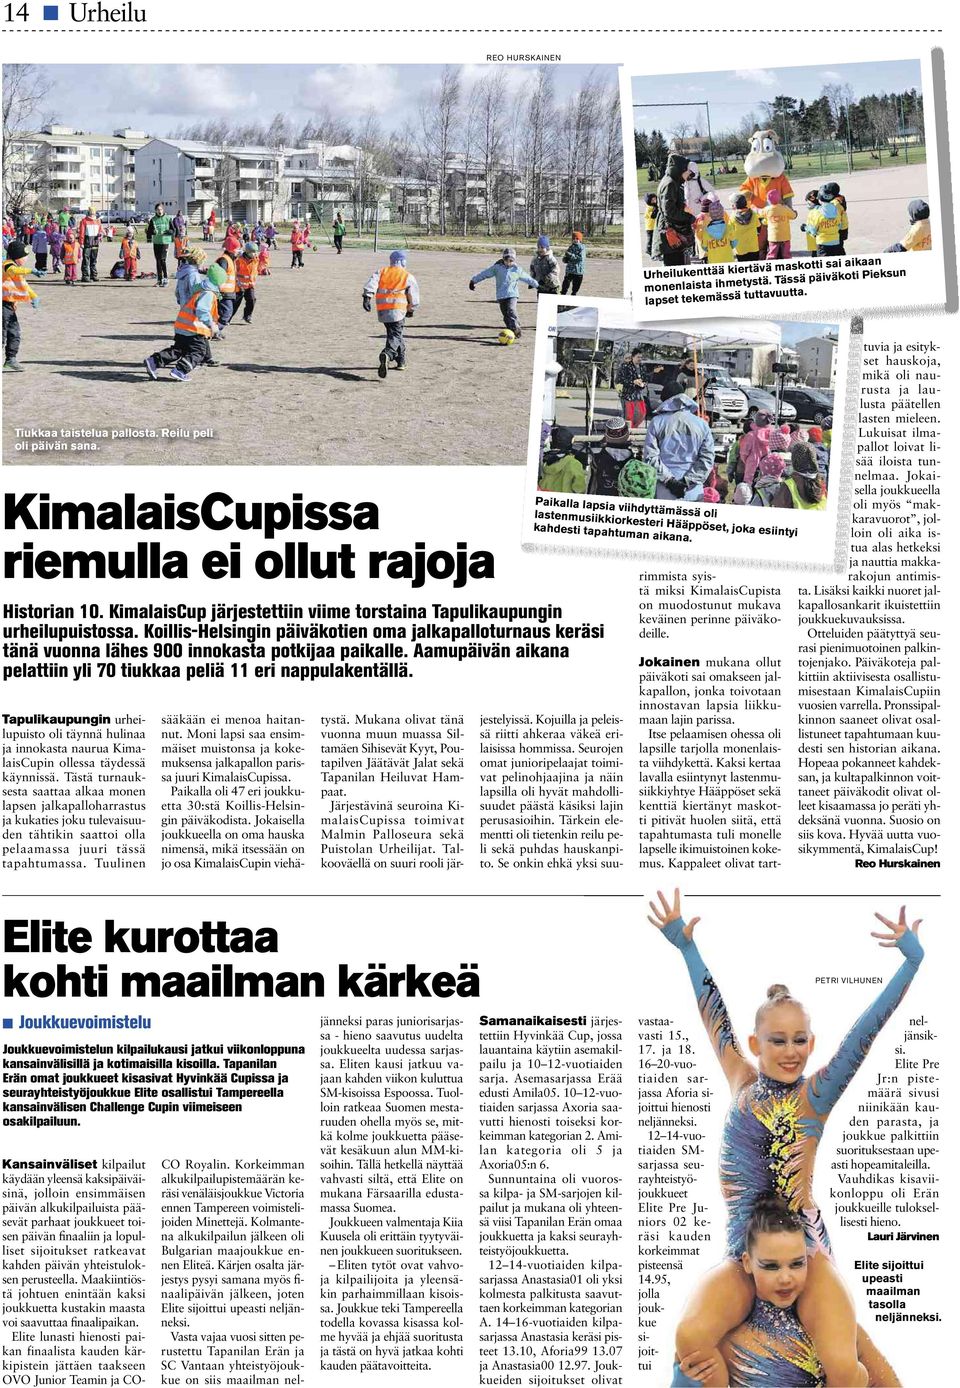 Koillis-Helsingin päiväkotien oma jalkapalloturnaus keräsi tänä vuonna lähes 900 innokasta potkijaa paikalle. Aamupäivän aikana pelattiin yli 70 tiukkaa peliä 11 eri nappulakentällä.